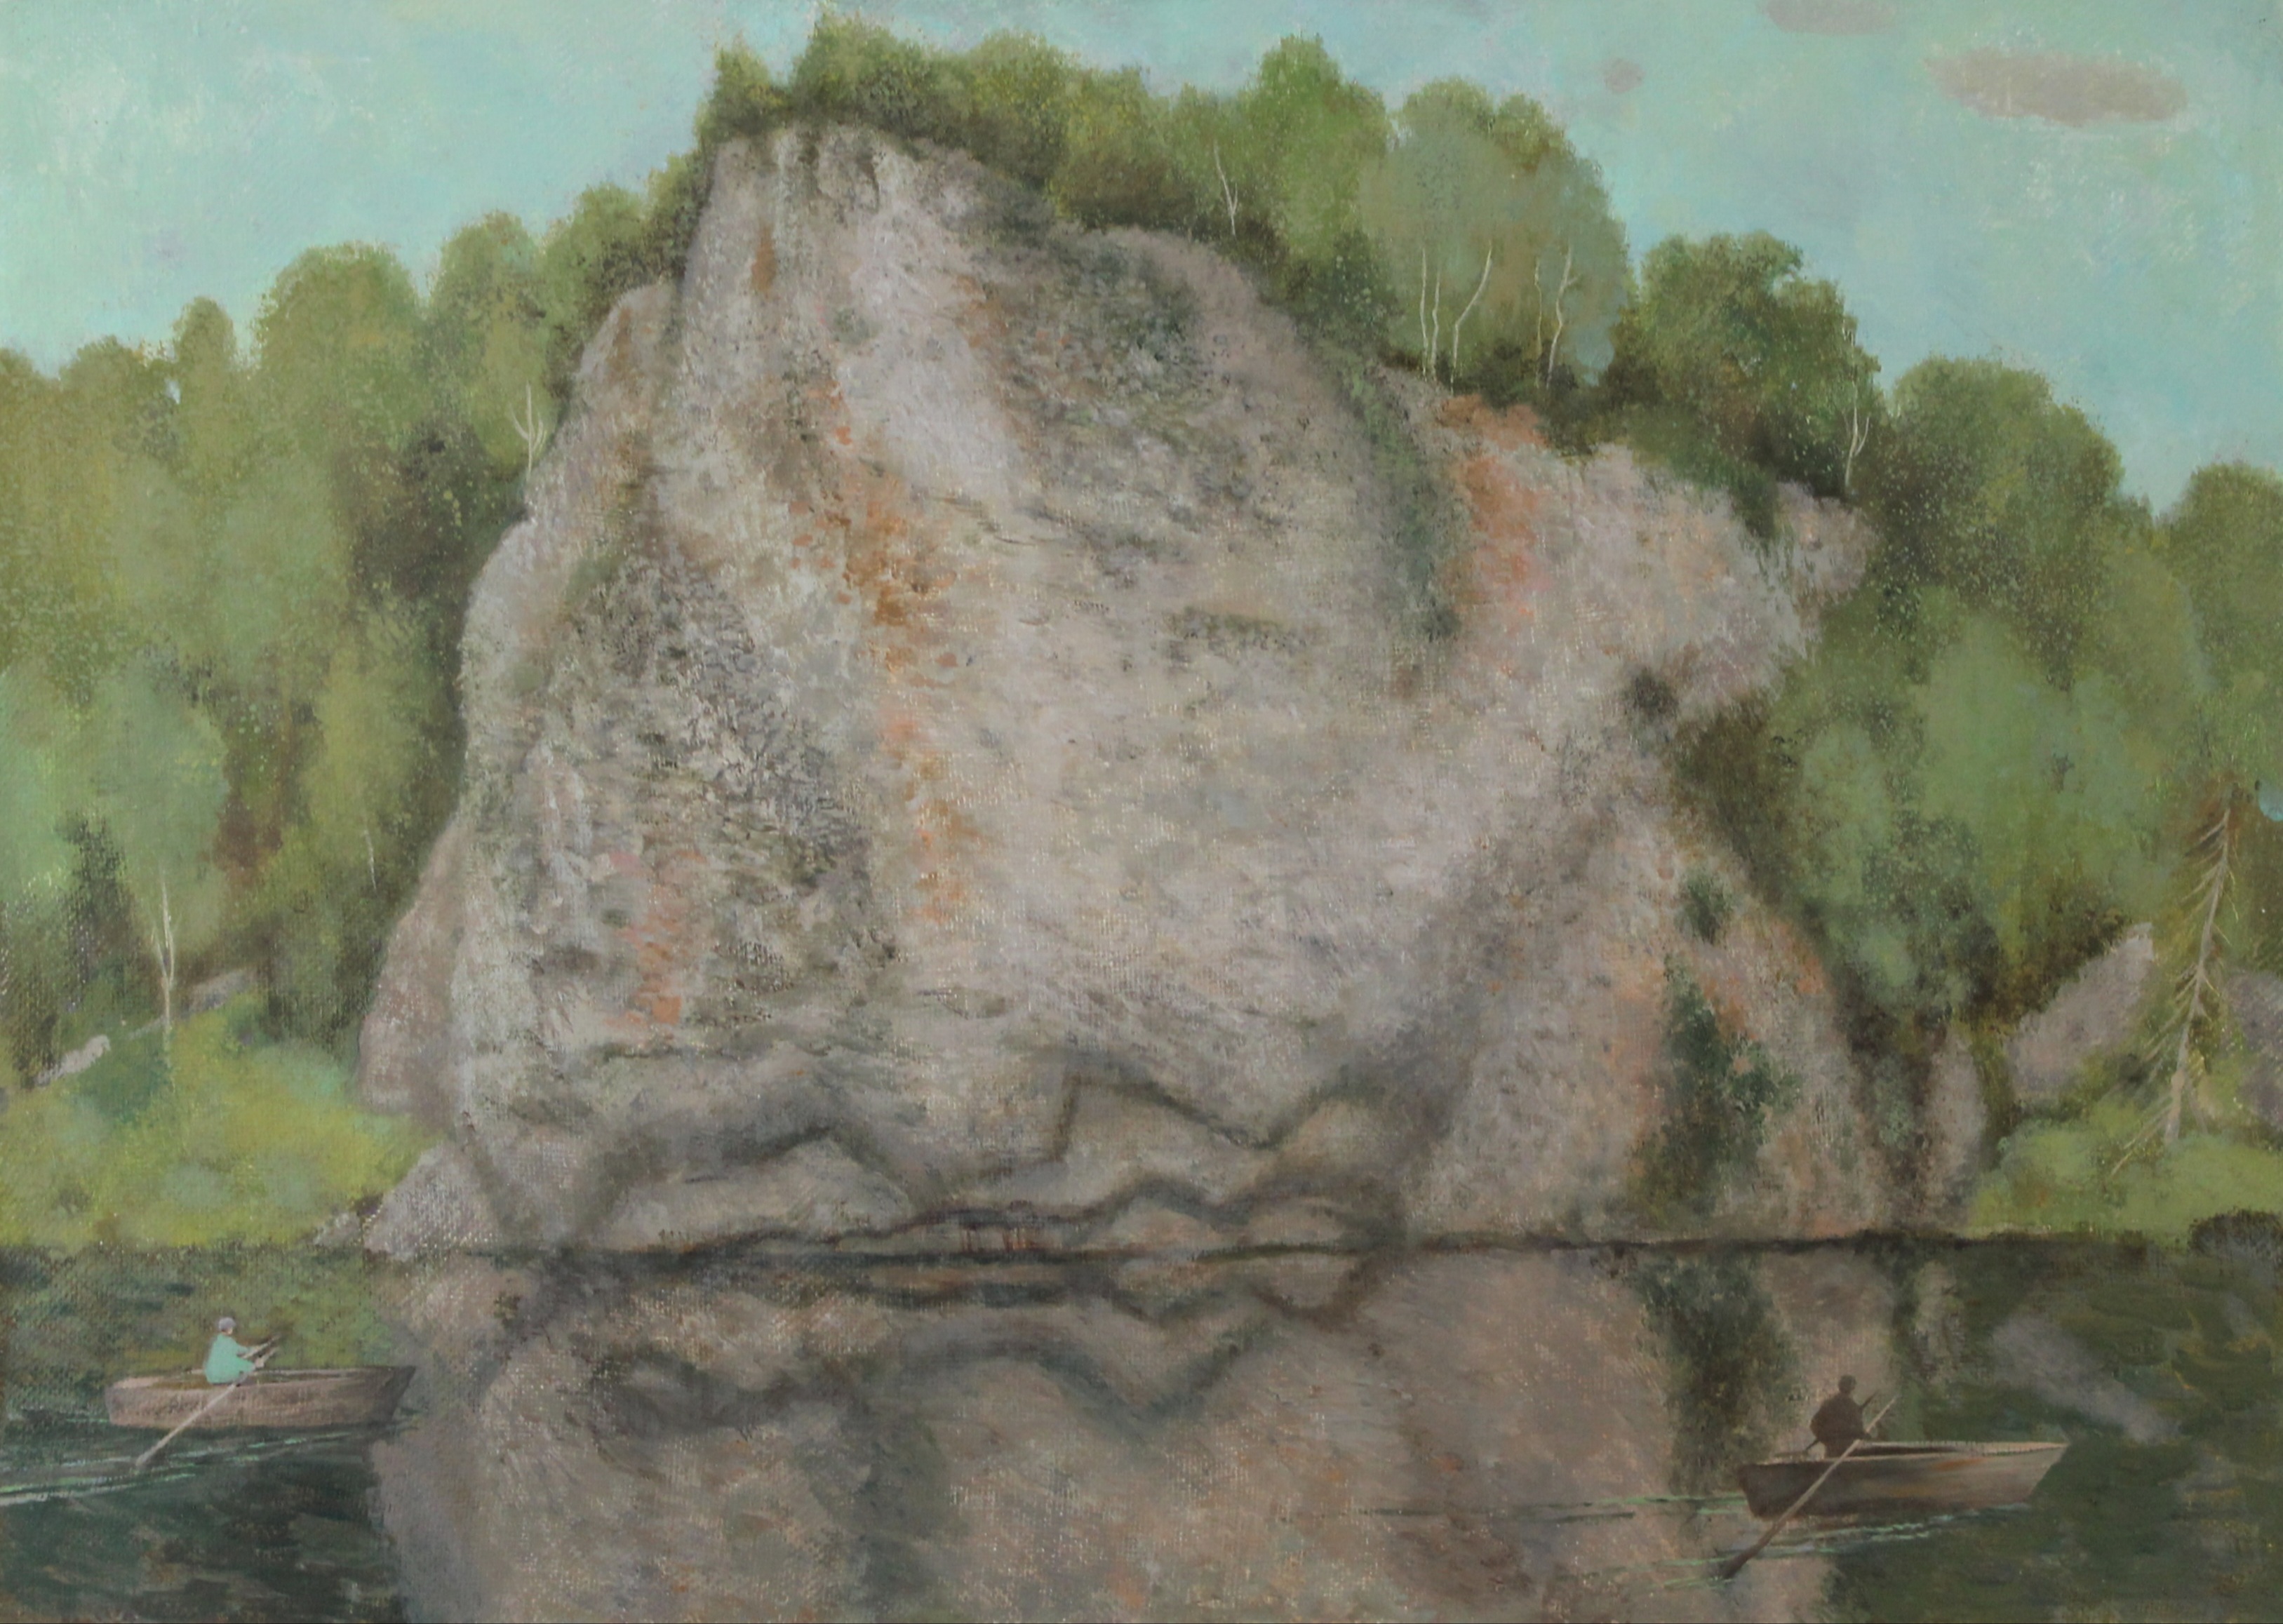 Mosin Rock- stone - 1, Mary Dobrovolskaya, 买画 油